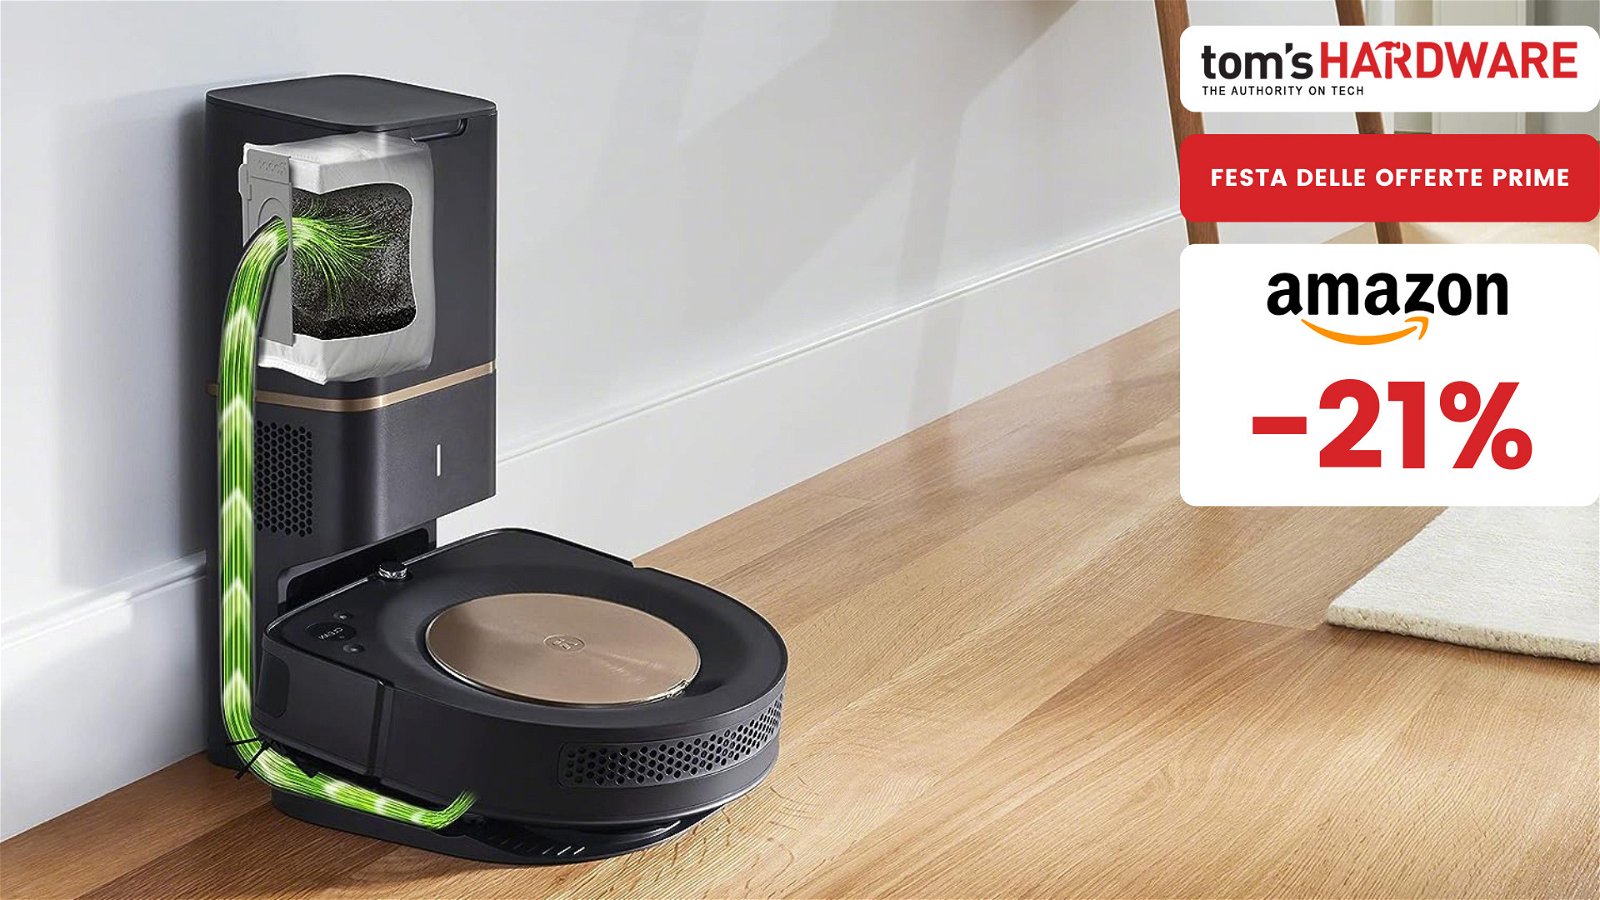 Immagine di Roomba s9+ al prezzo più basso di sempre grazie alla Festa delle Offerte Prime!